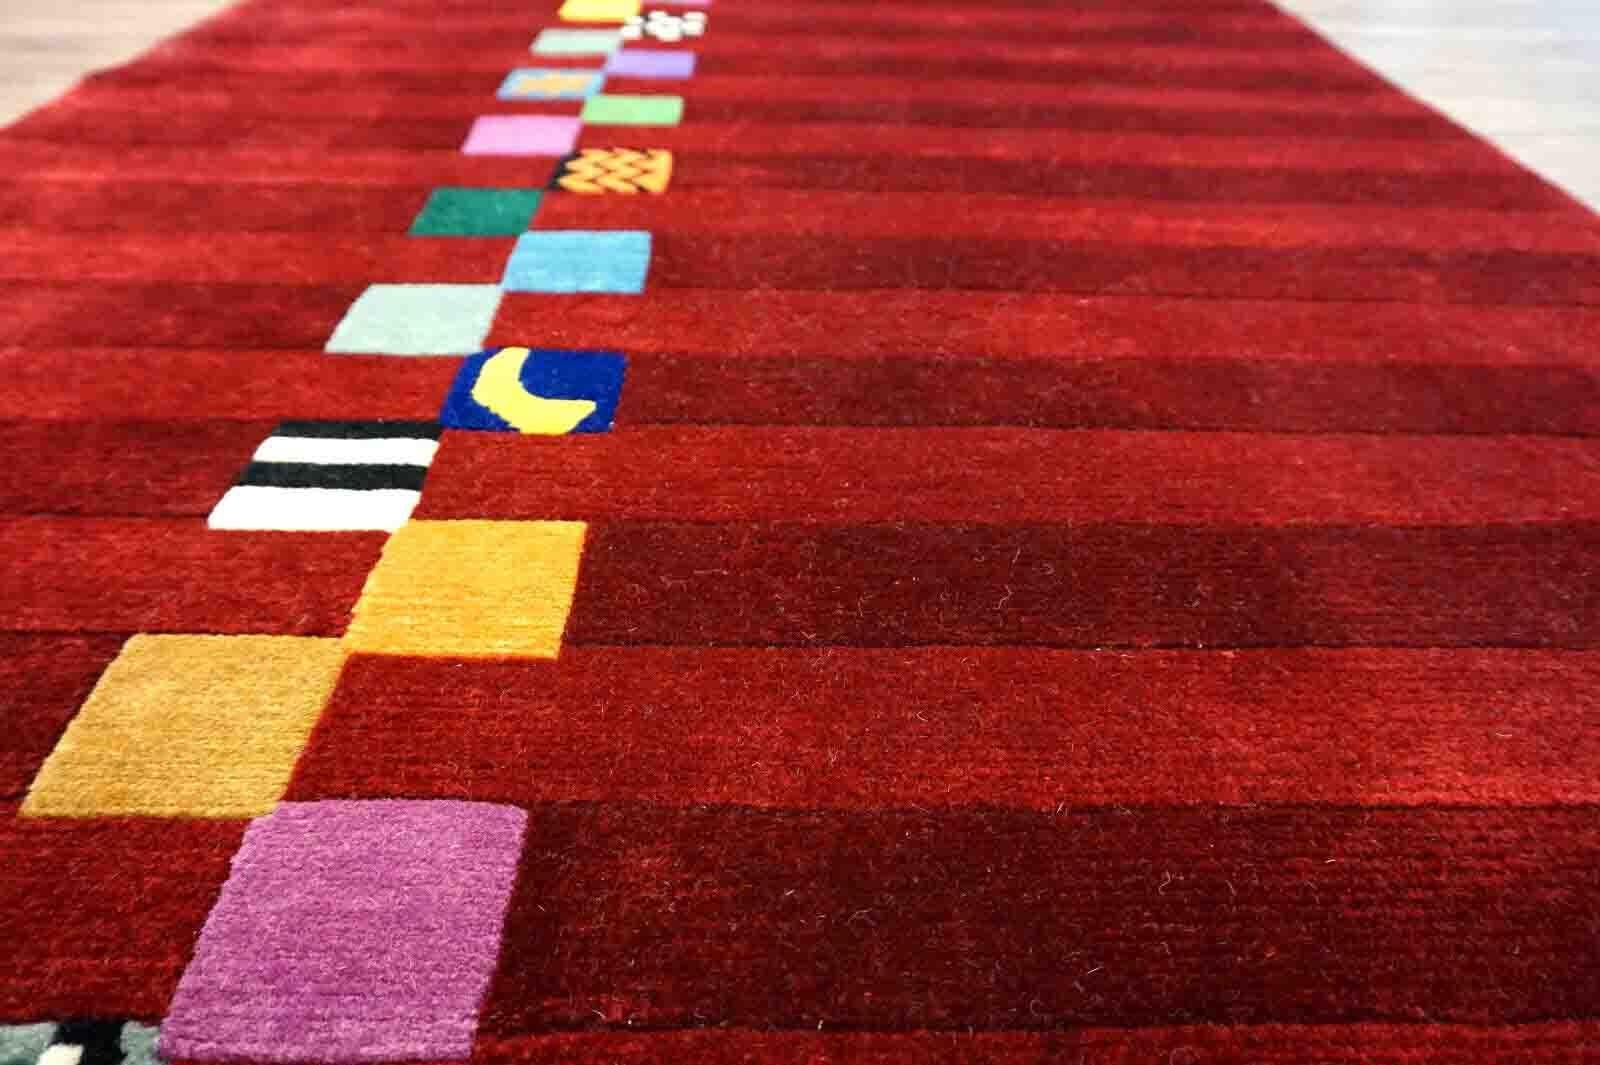 Handgefertigter Gabbeh-Teppich in leuchtendem Rot und buntem geometrischem Muster. Der Teppich stammt aus dem Ende des 20. Jahrhunderts und ist in gutem Originalzustand.

-Zustand: original gut,

-Umgebung: 1970er Jahre,

-Größe: 3,6' x 5,9' (112cm